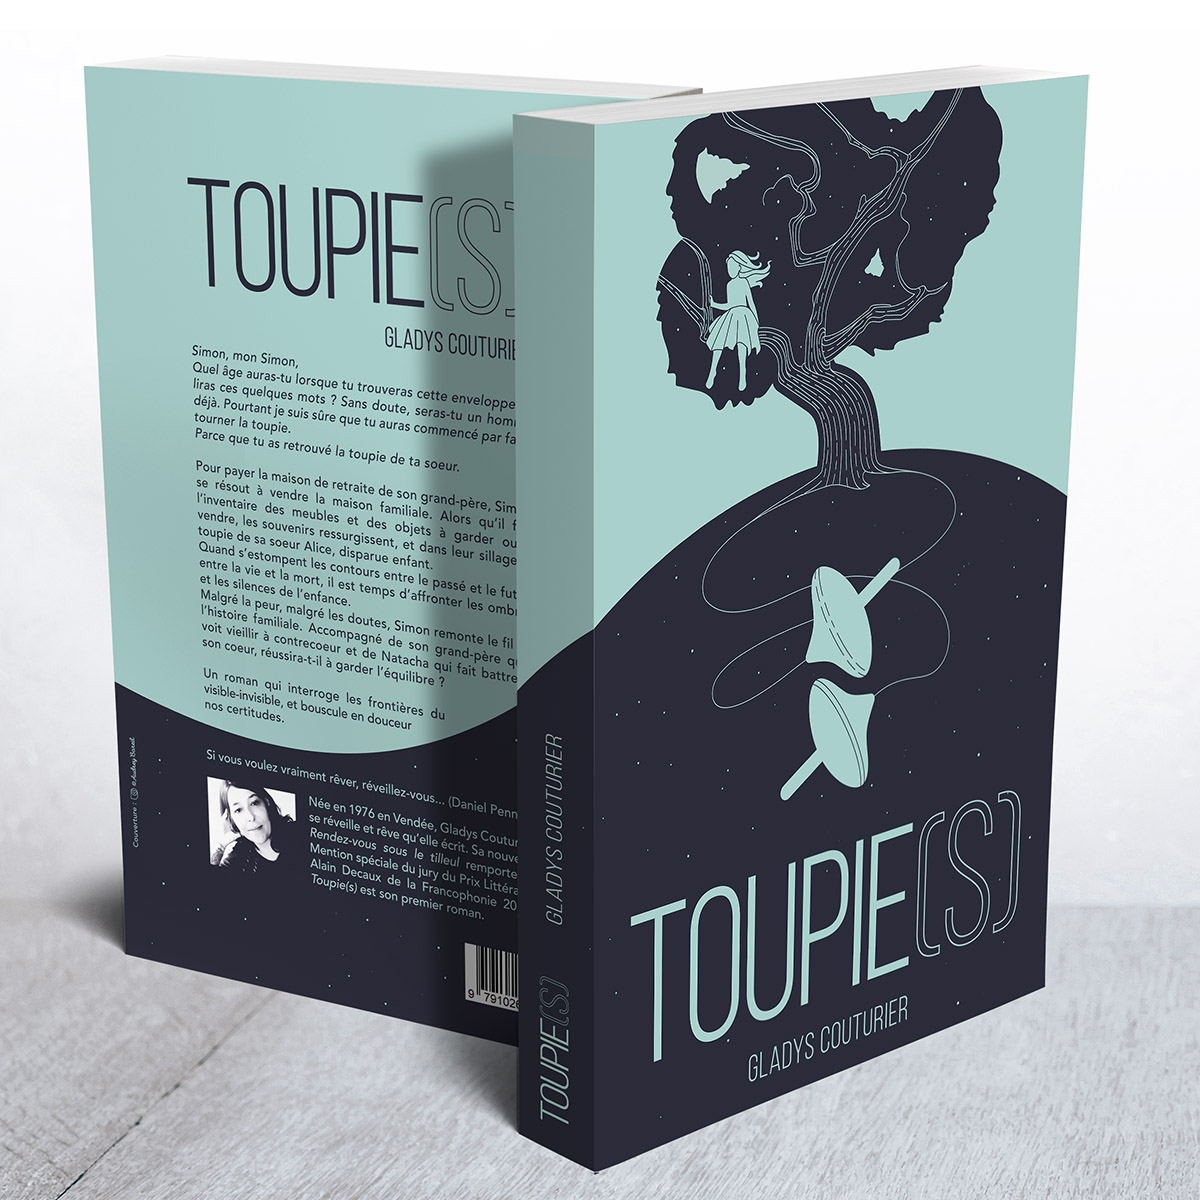 Toupie(s)